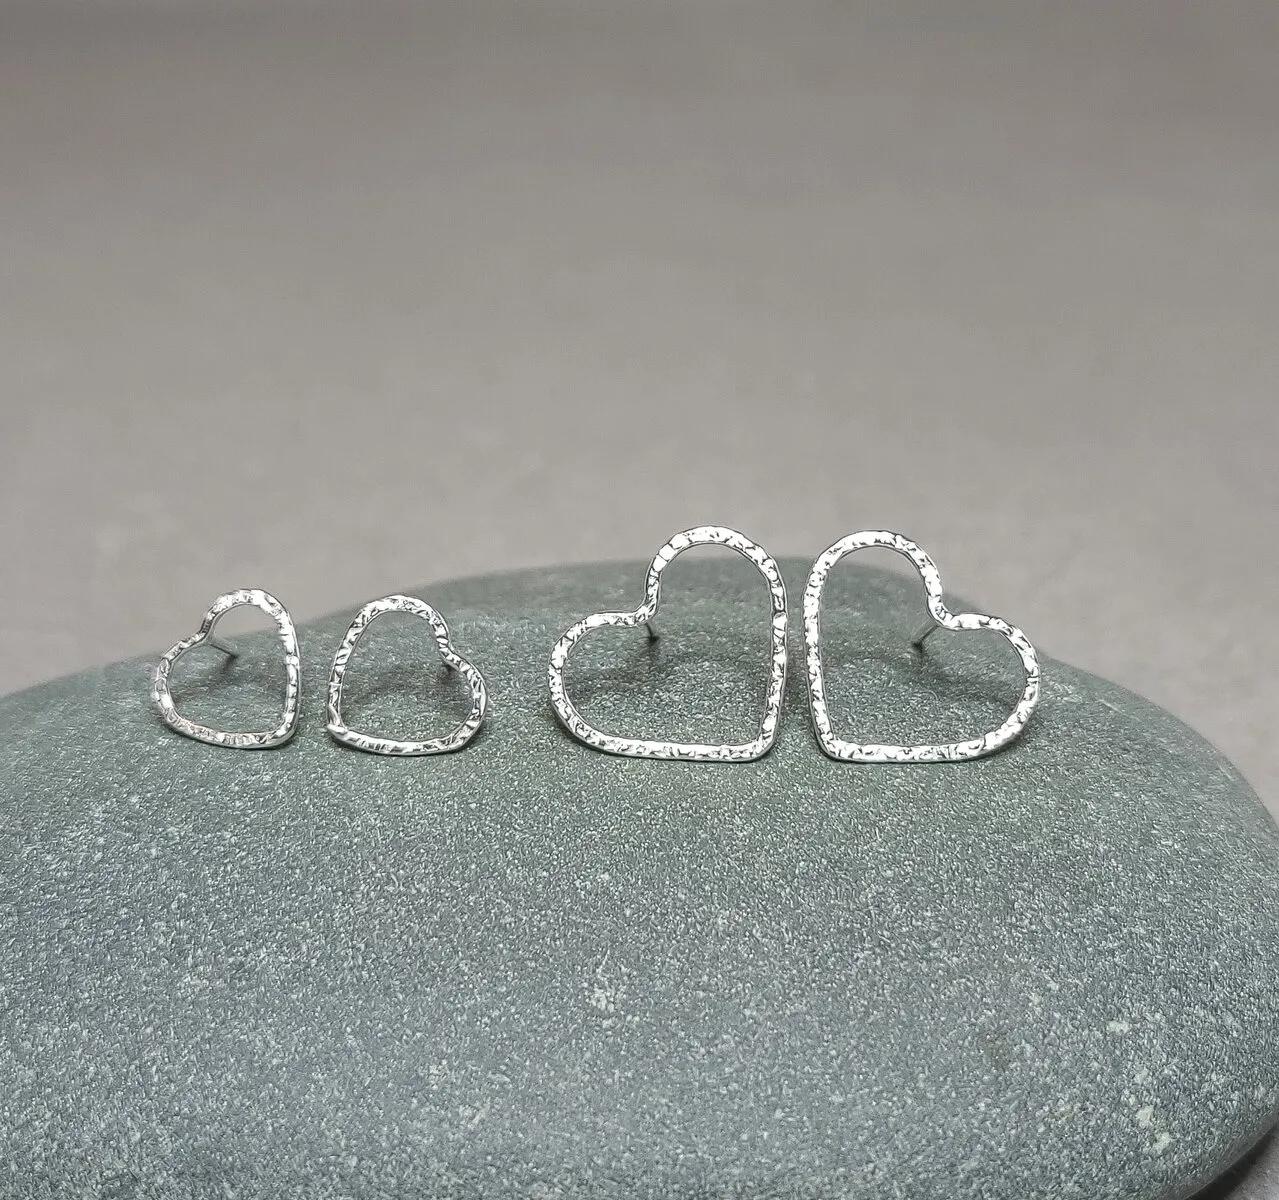 small heart stud earrings